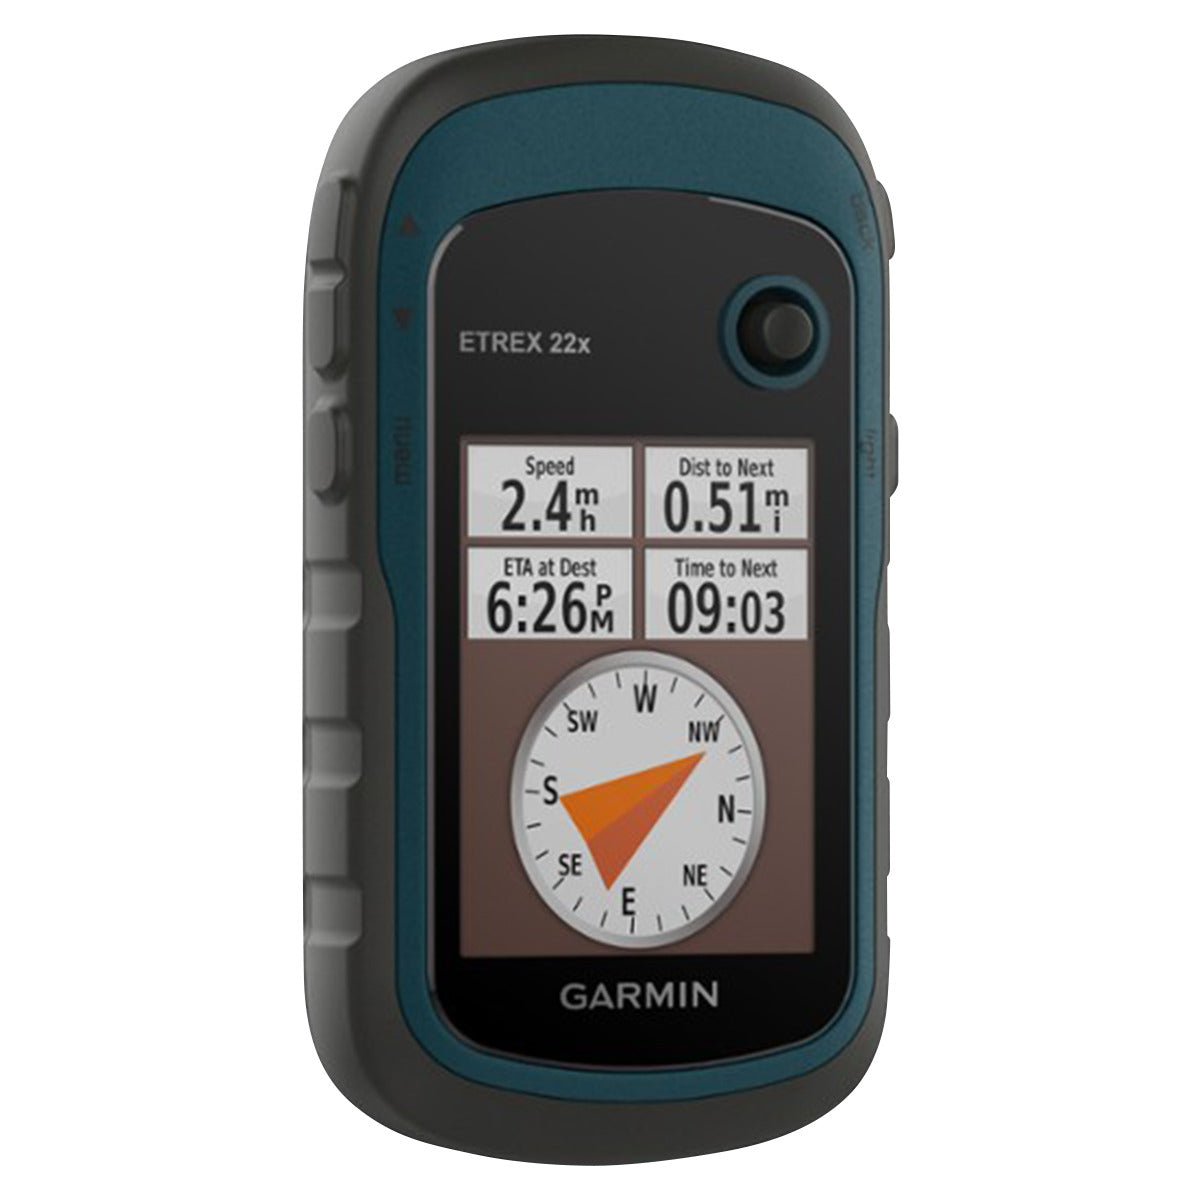  Garmin 010-02256-00 eTrex 22x, Rugged Handheld GPS Navigator,  Black/Navy : Electronics